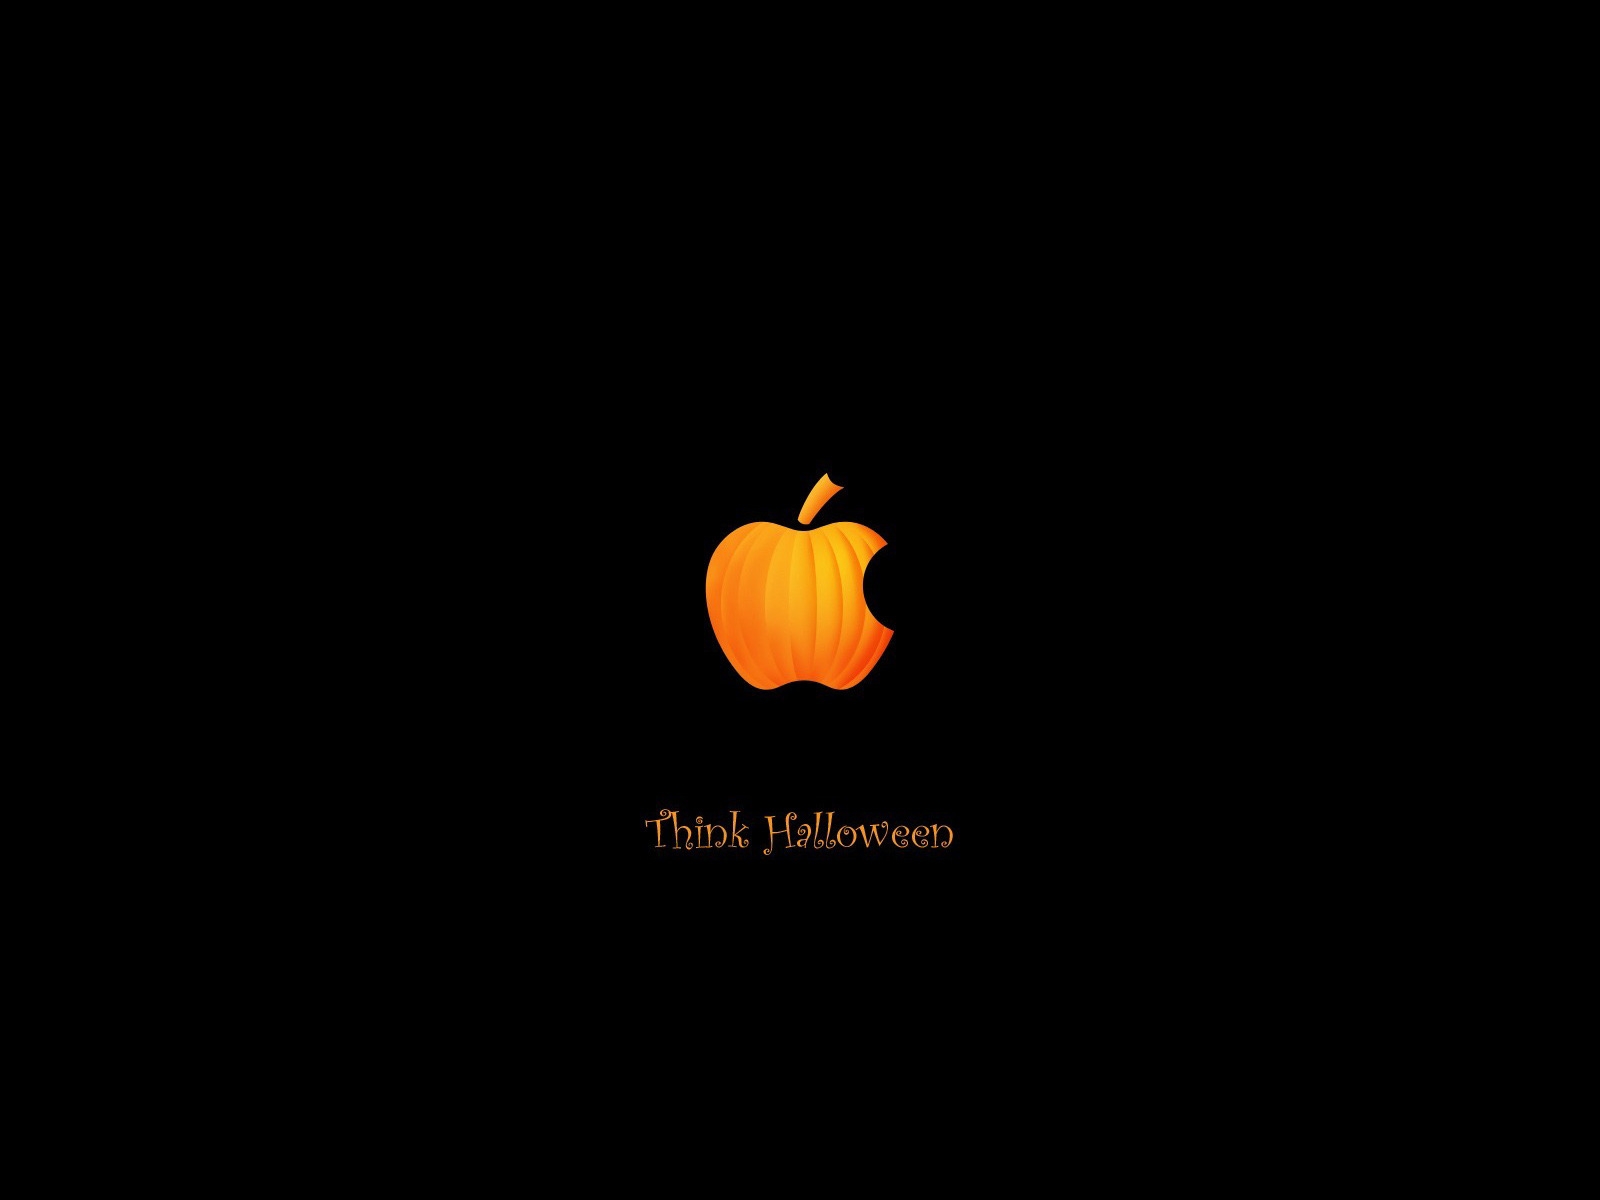 Pumpkin Apple for 1600 x 1200 resolution